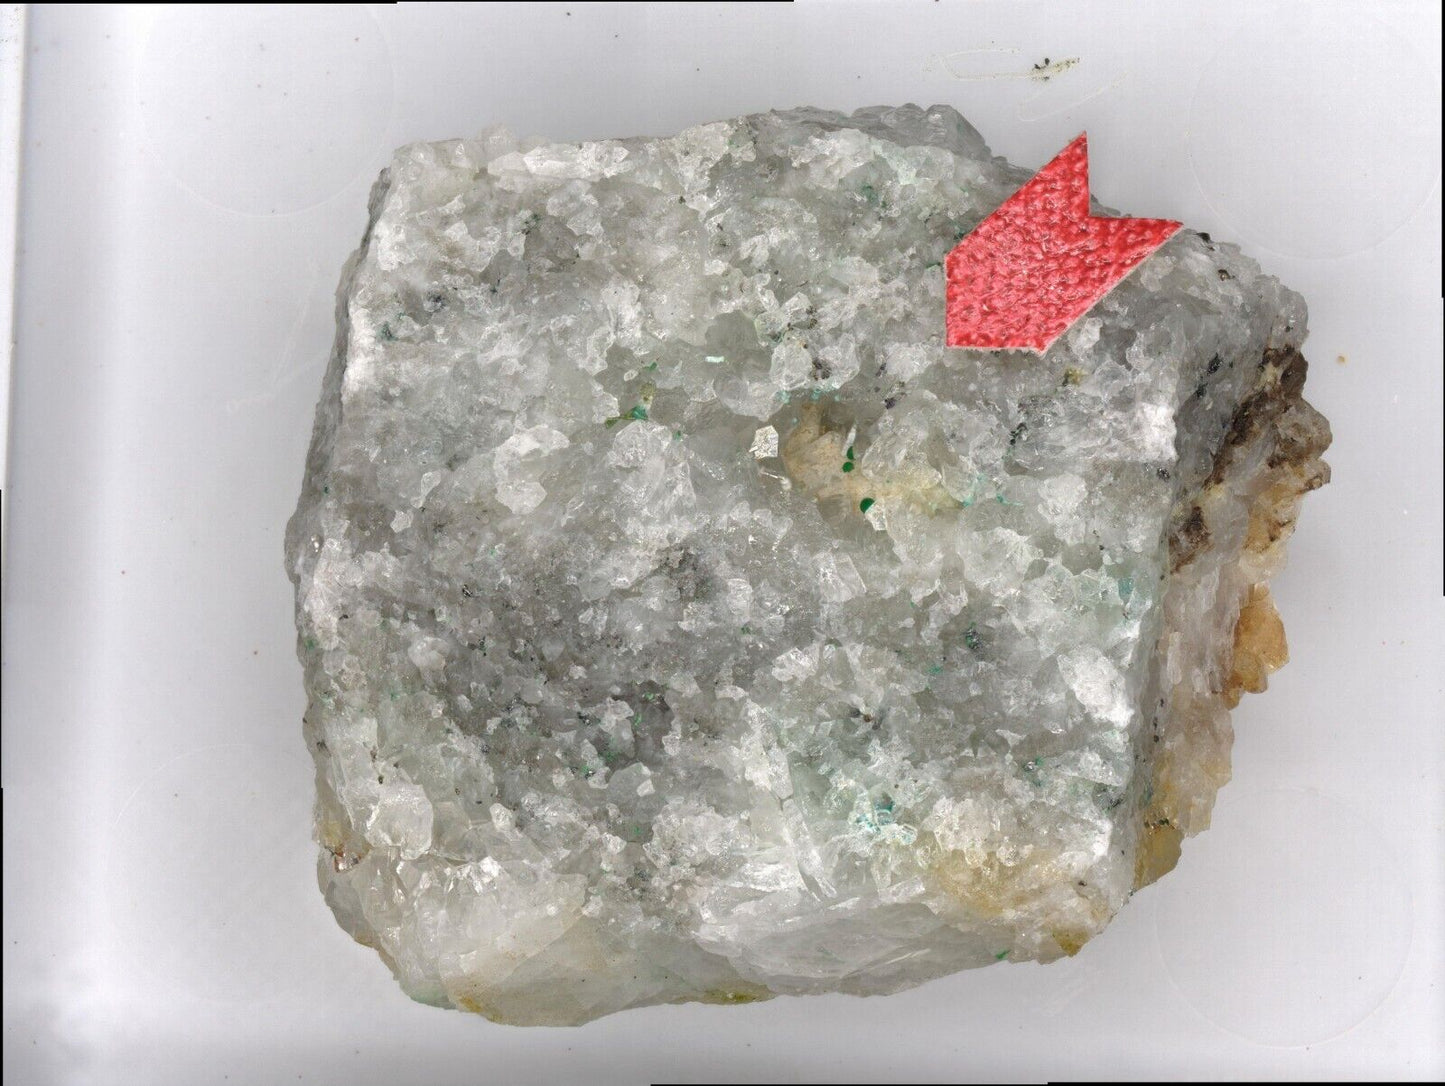 Eurekadumpite in cavities of quartz from the North Star mine, Utah, USA